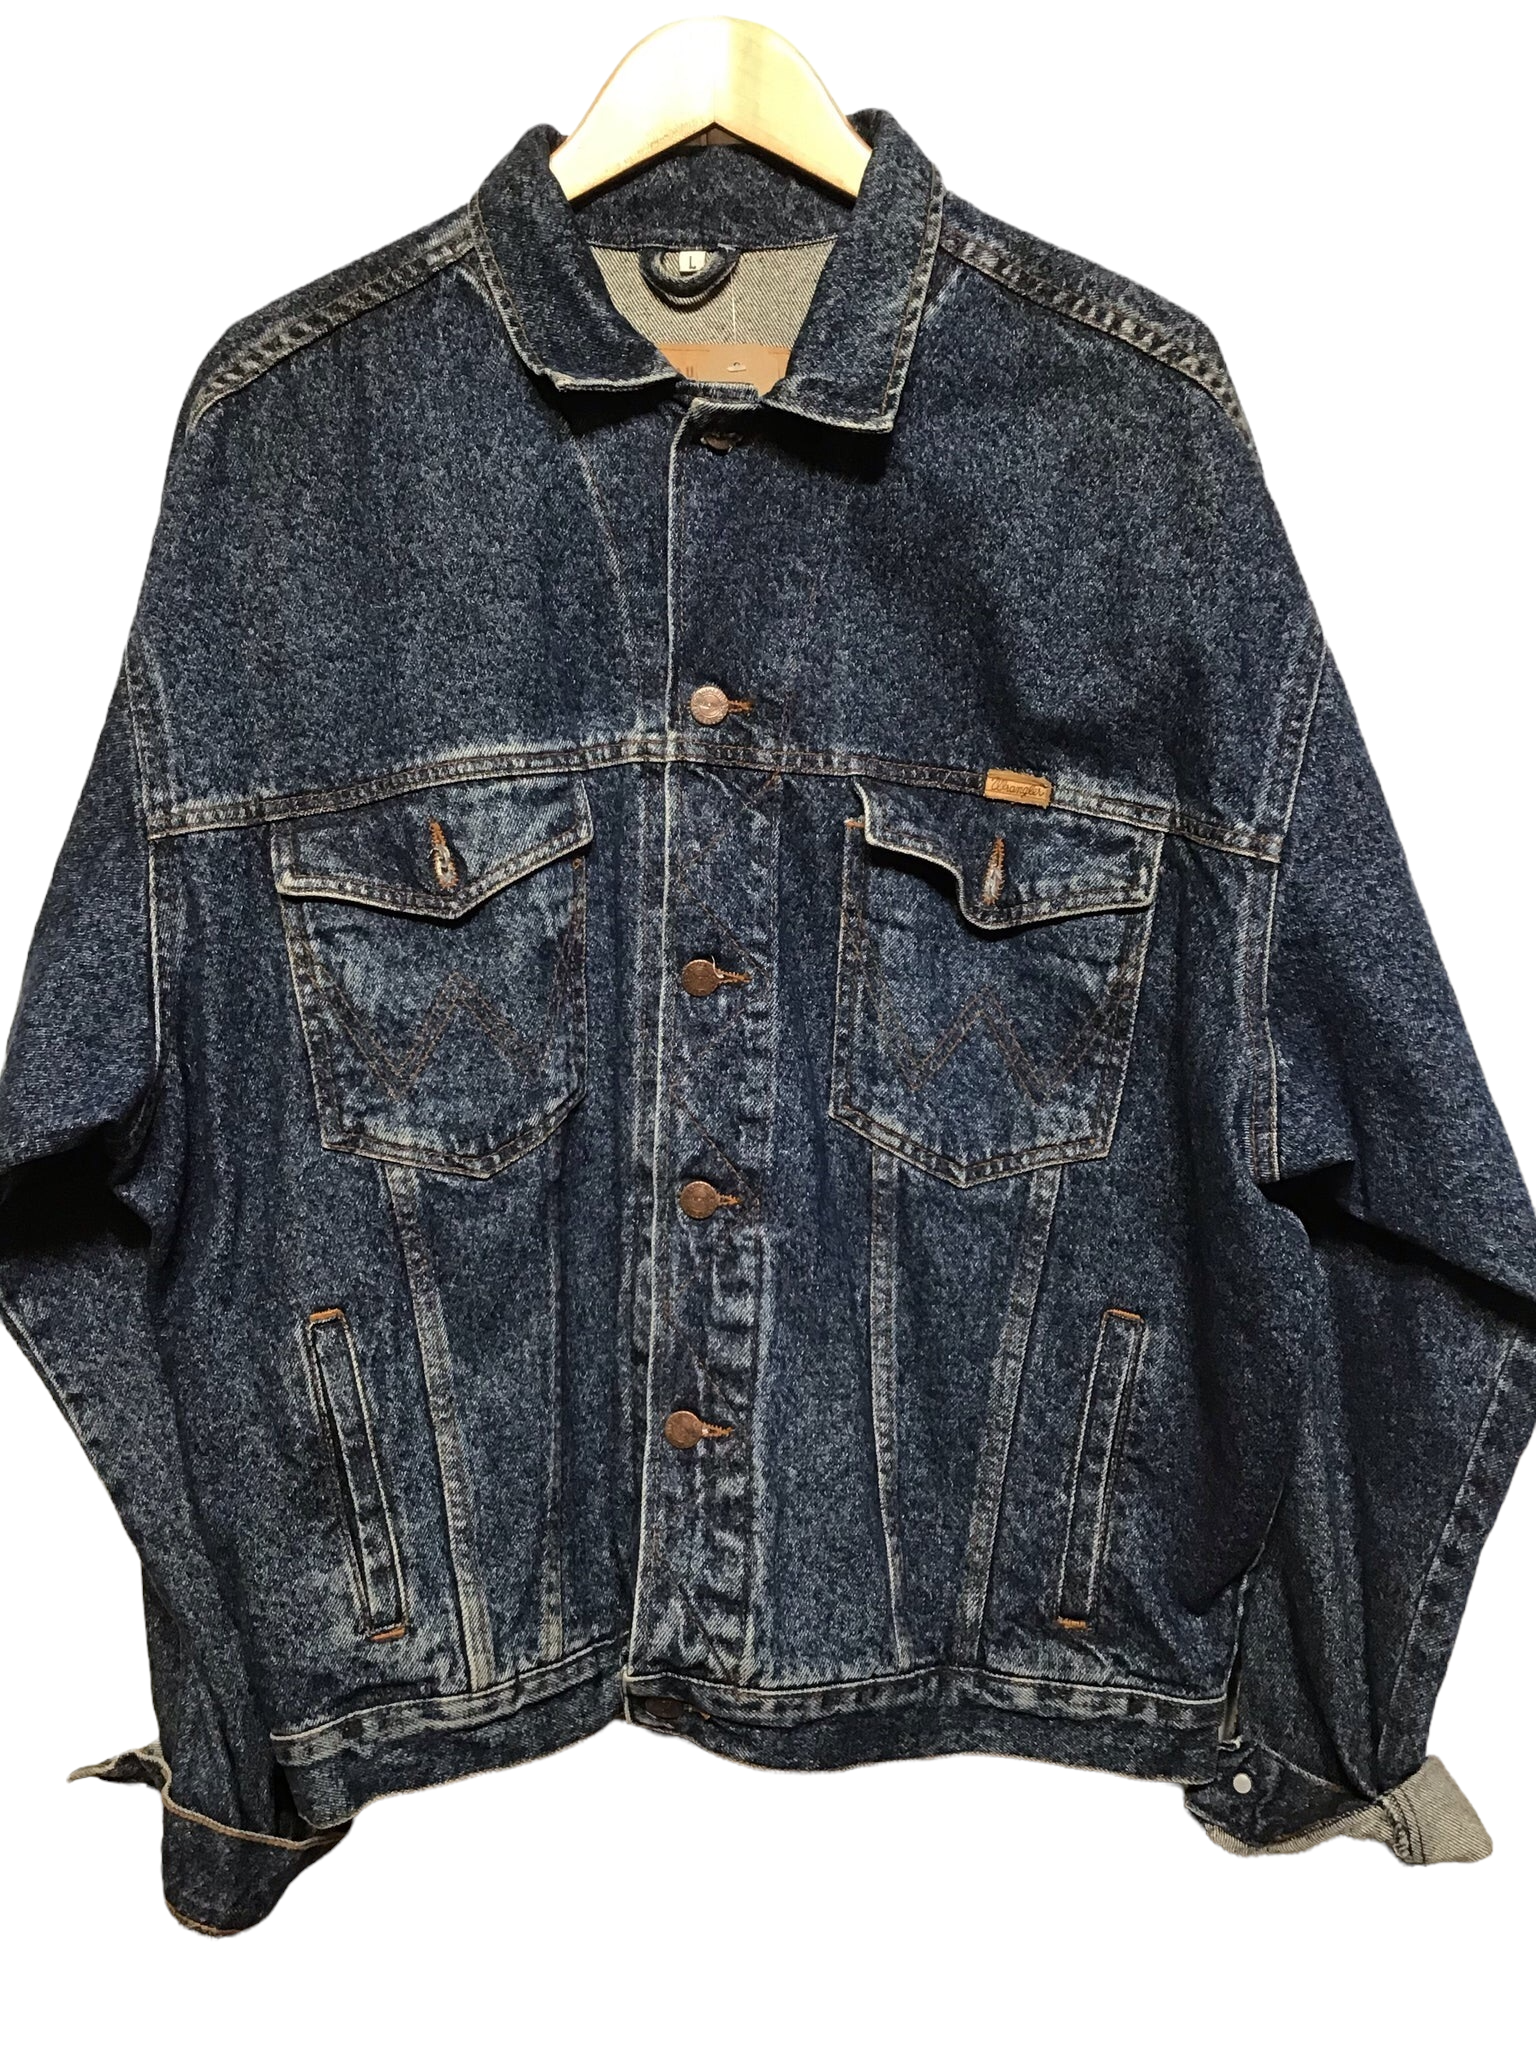 Wrangler Denim Jacket (Size L) – Loft 68 Vintage